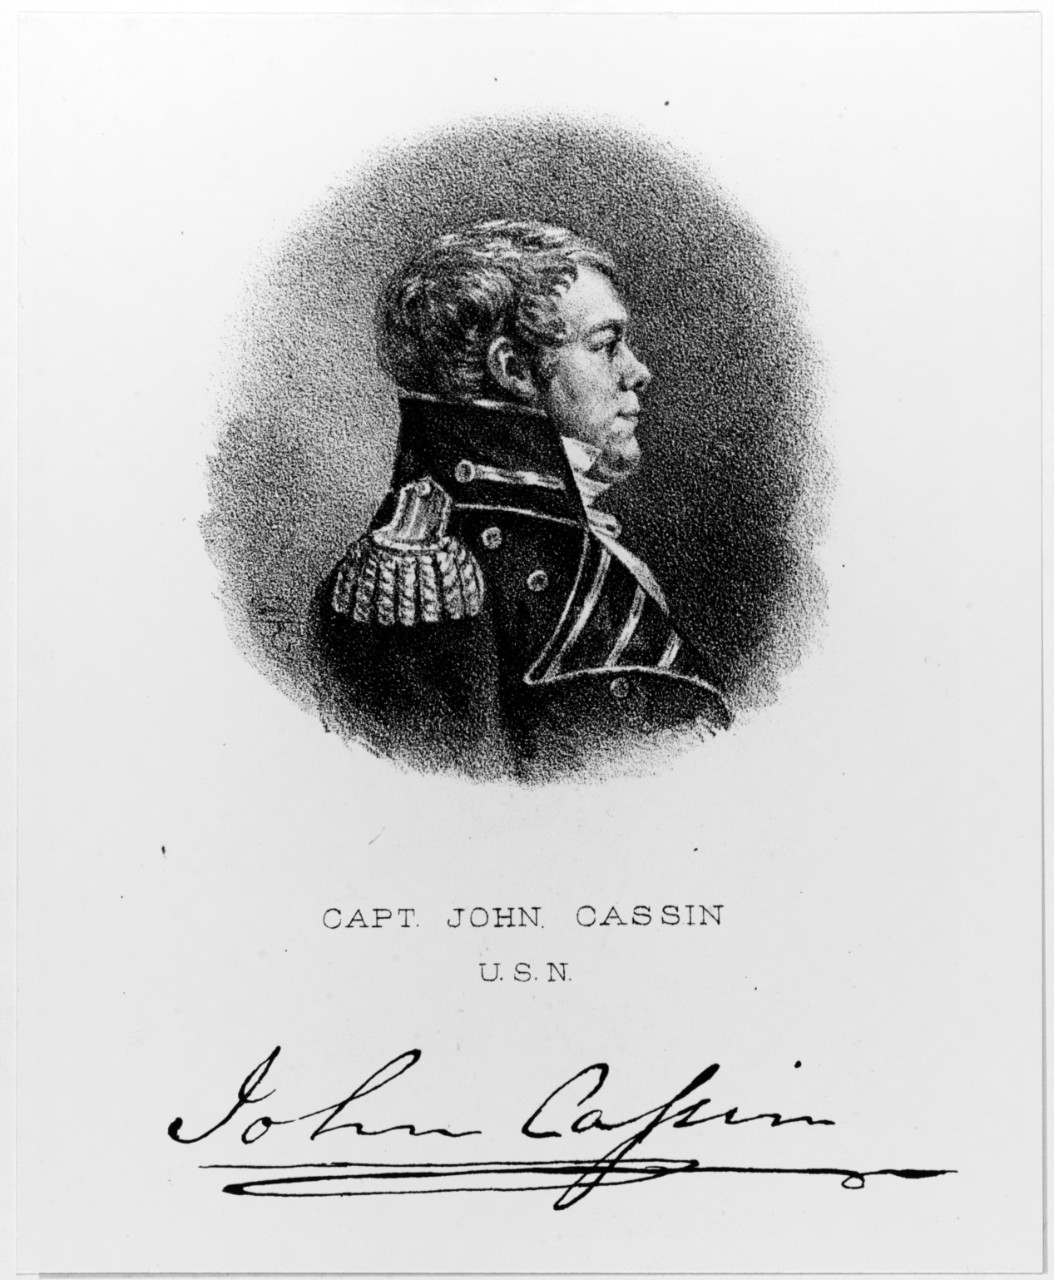 Captain John Cassin, USN